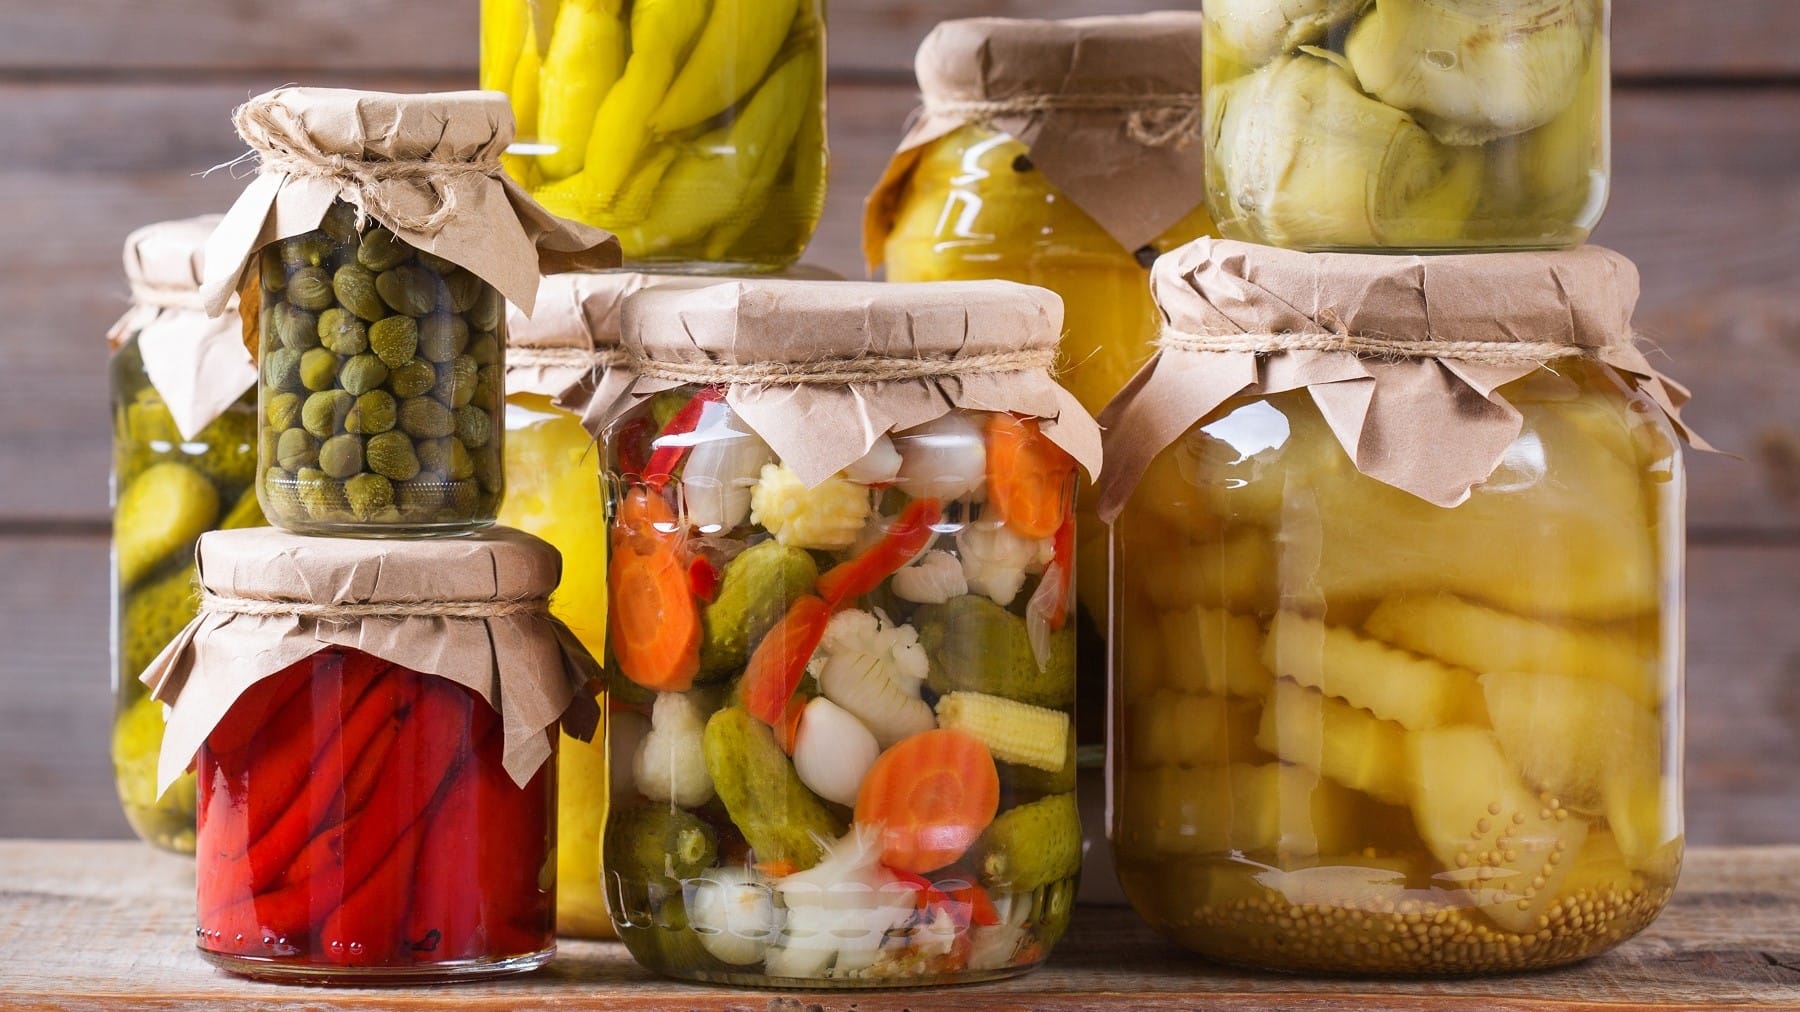 Mixed Pickles, gemischtes eingelegtes Gemüse in einem Einmachglas, umgeben von weiteren Gläsern mit eingemachtem Gemüse.